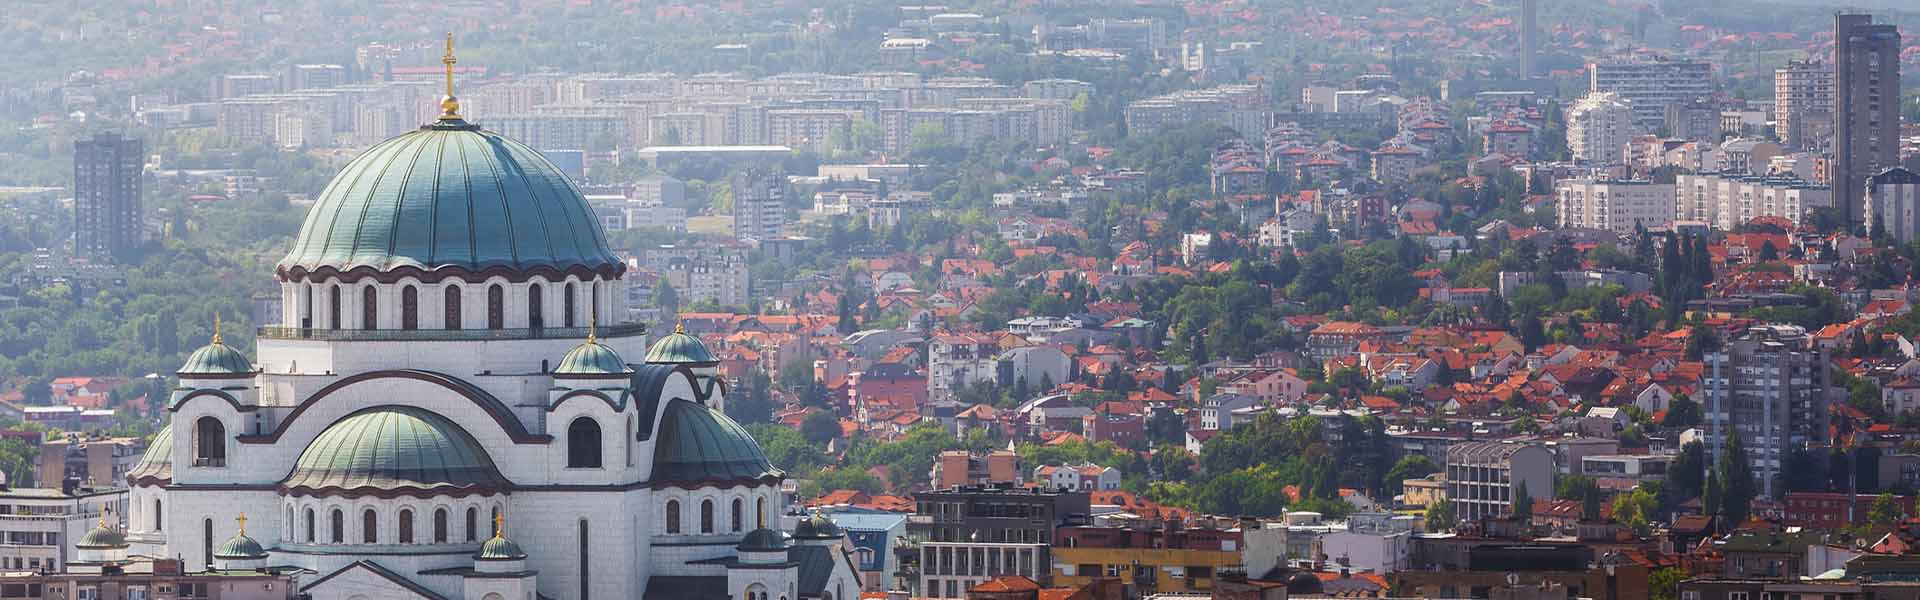 Rent a car Vracar | Belgrade, Serbia